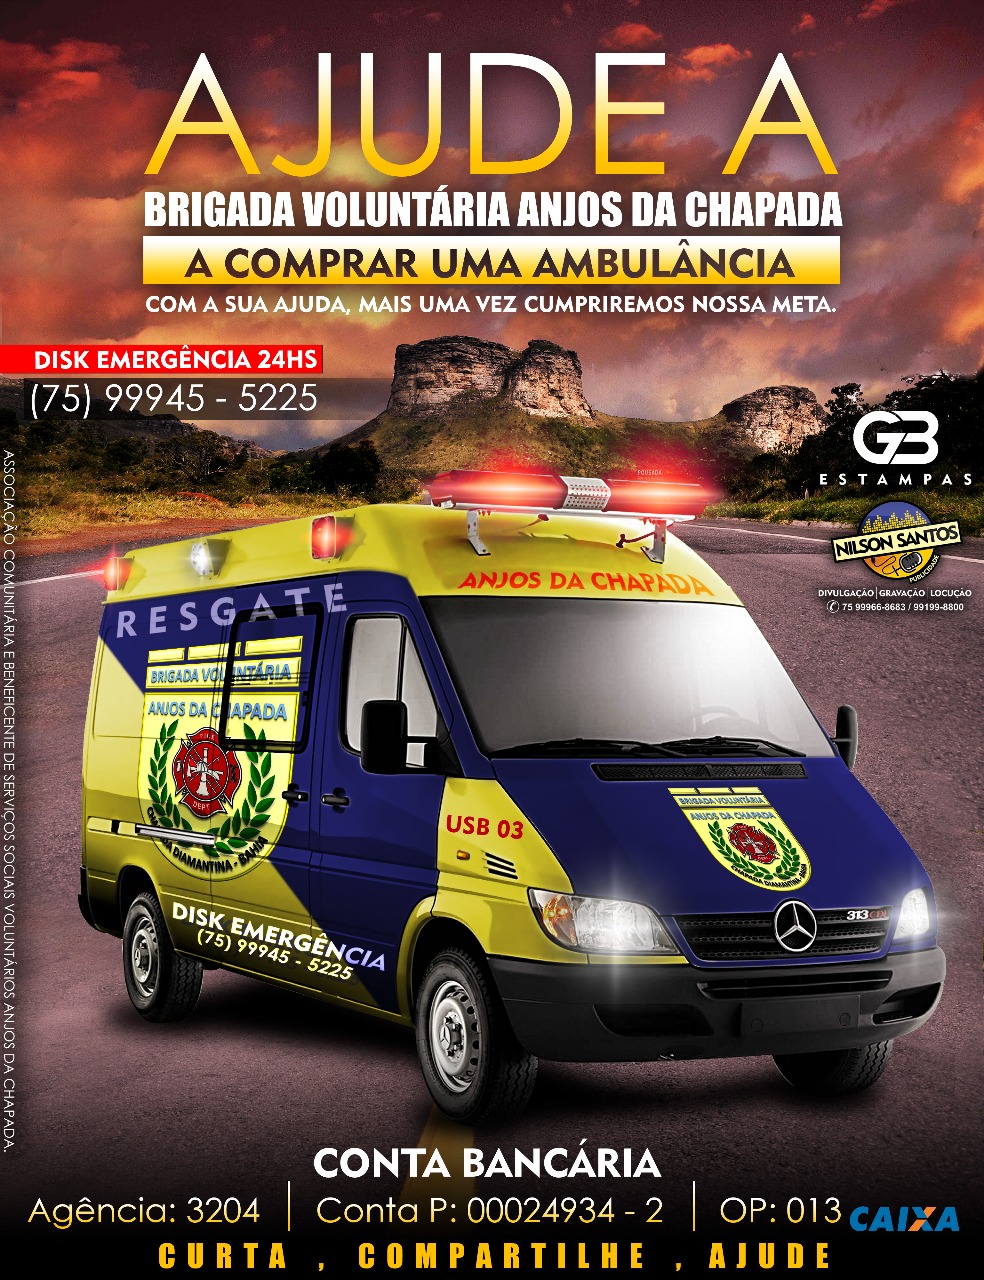 Vaquinha Online -Doações - Foto de capa do Edilson Felix Oliveira